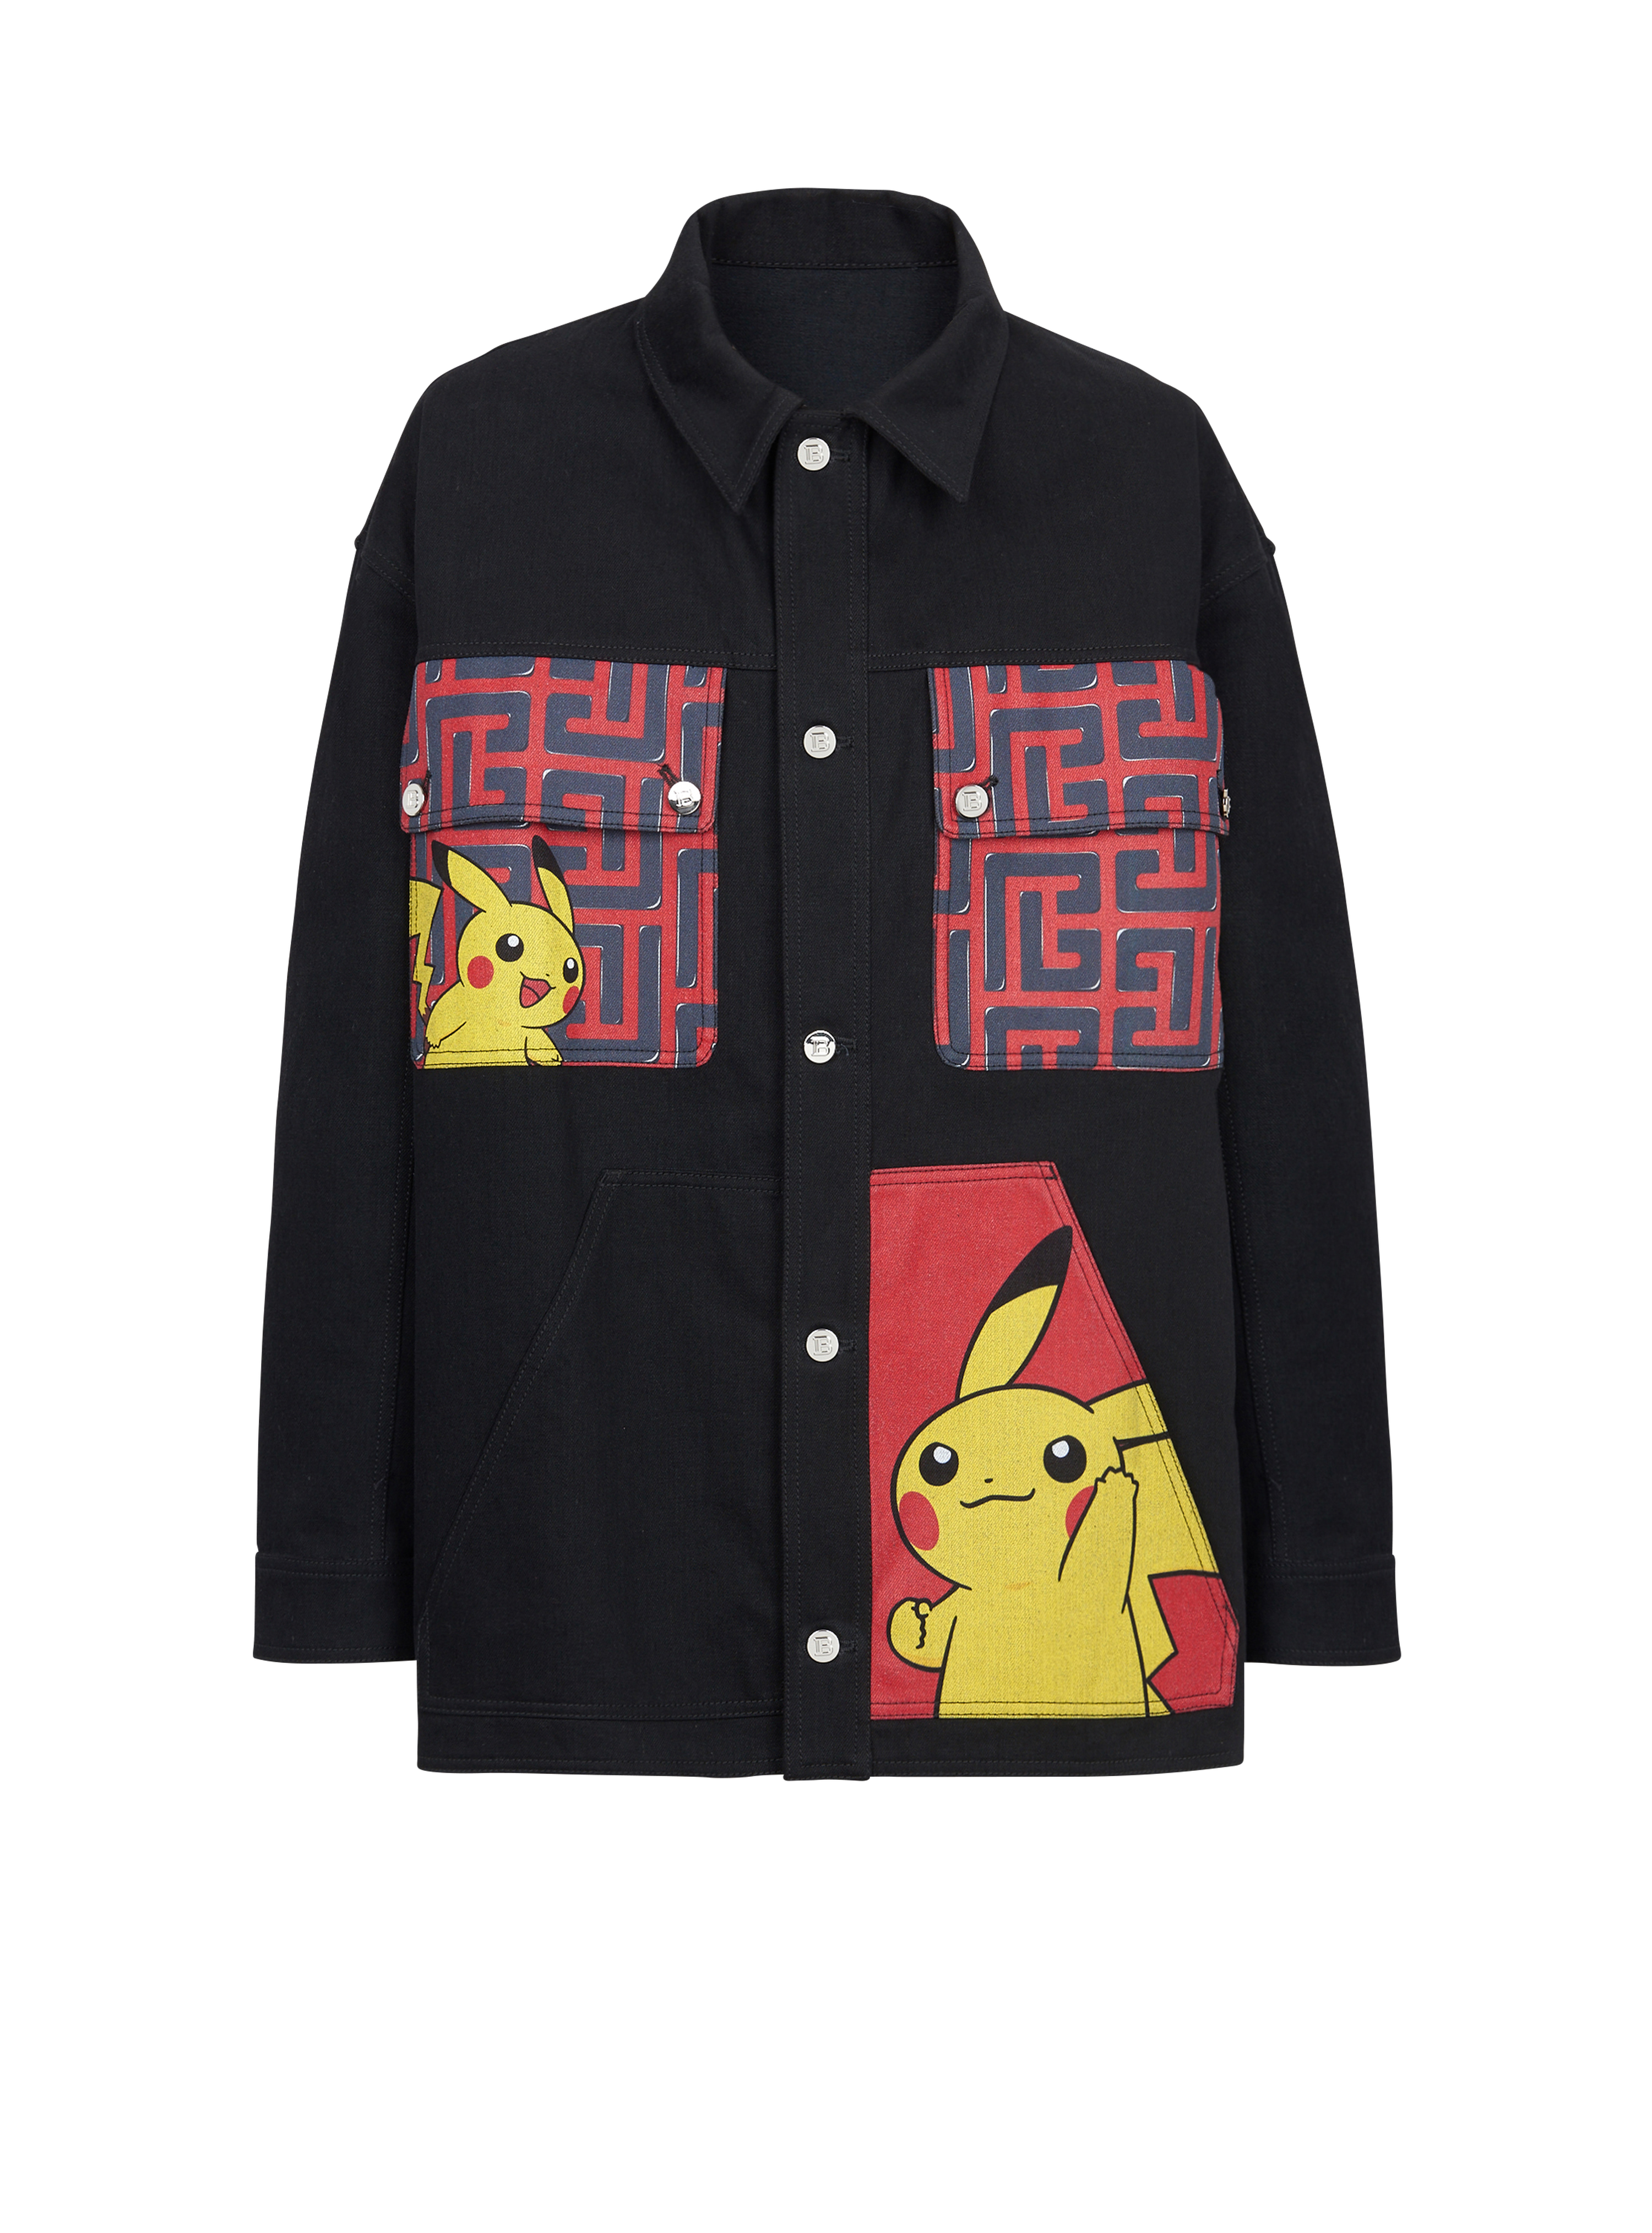 Unisex - Denim jacket with Pokémon print, red